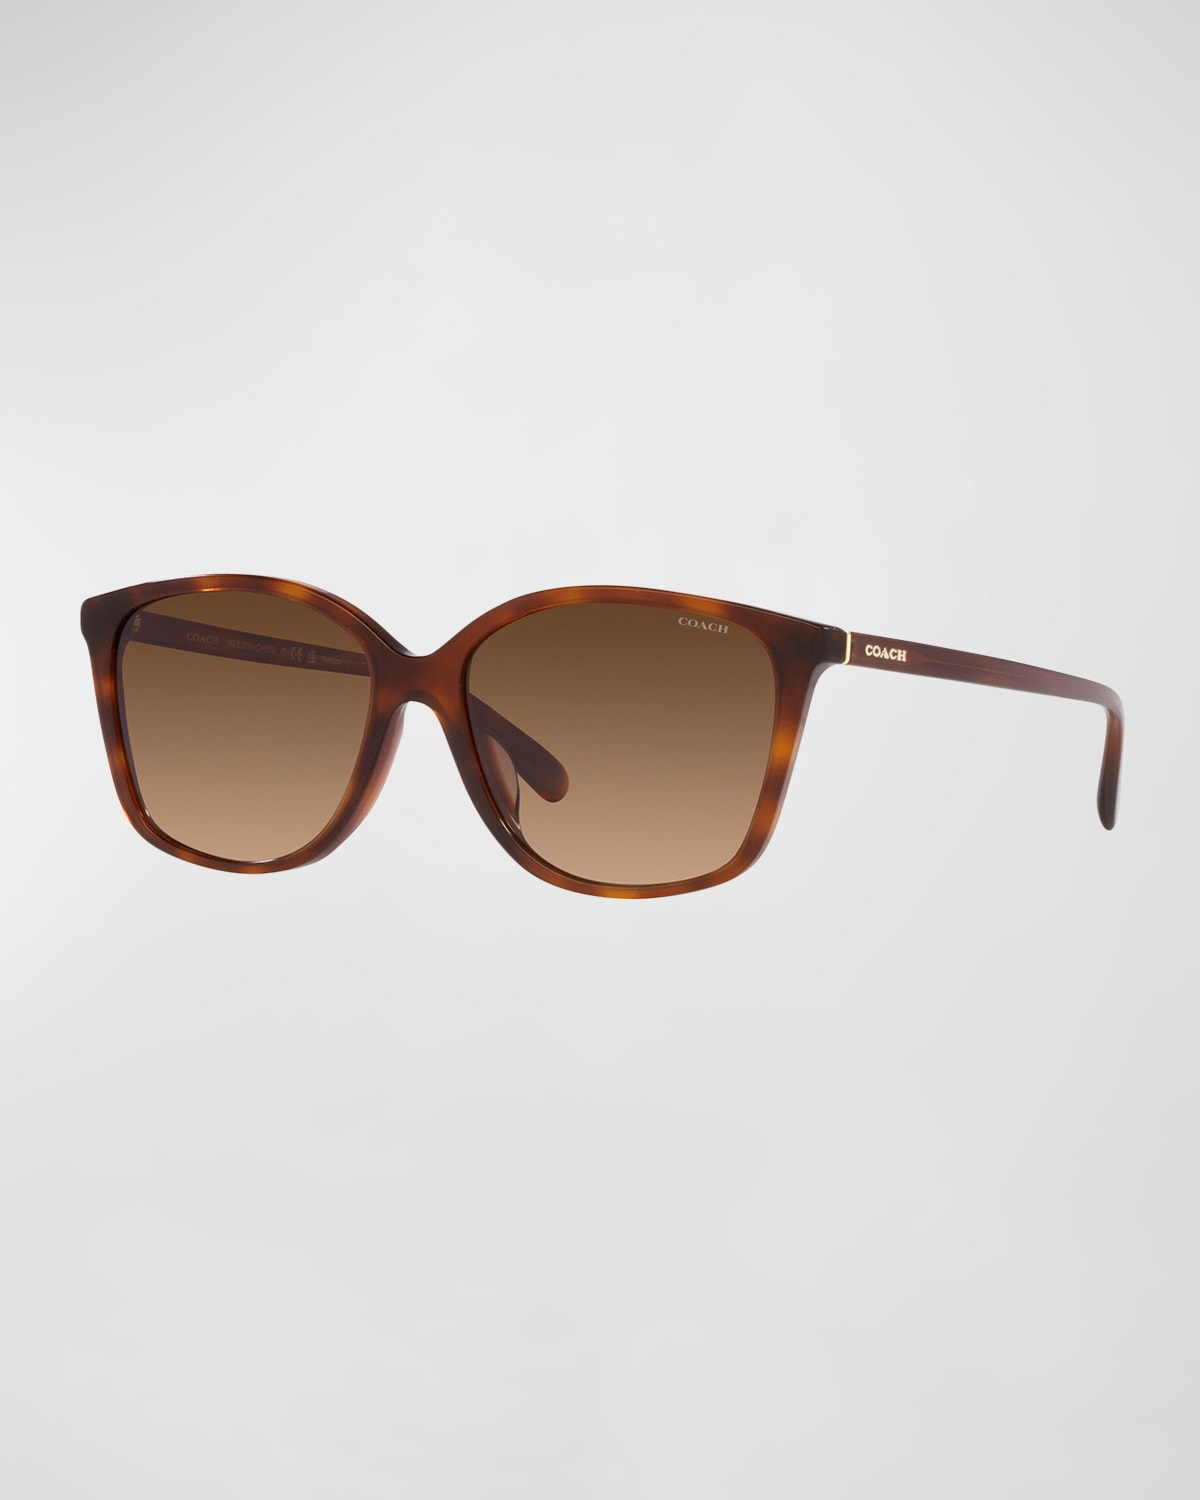 Tom Ford Gradient Square Acetate Sunglasses Neiman Marcus